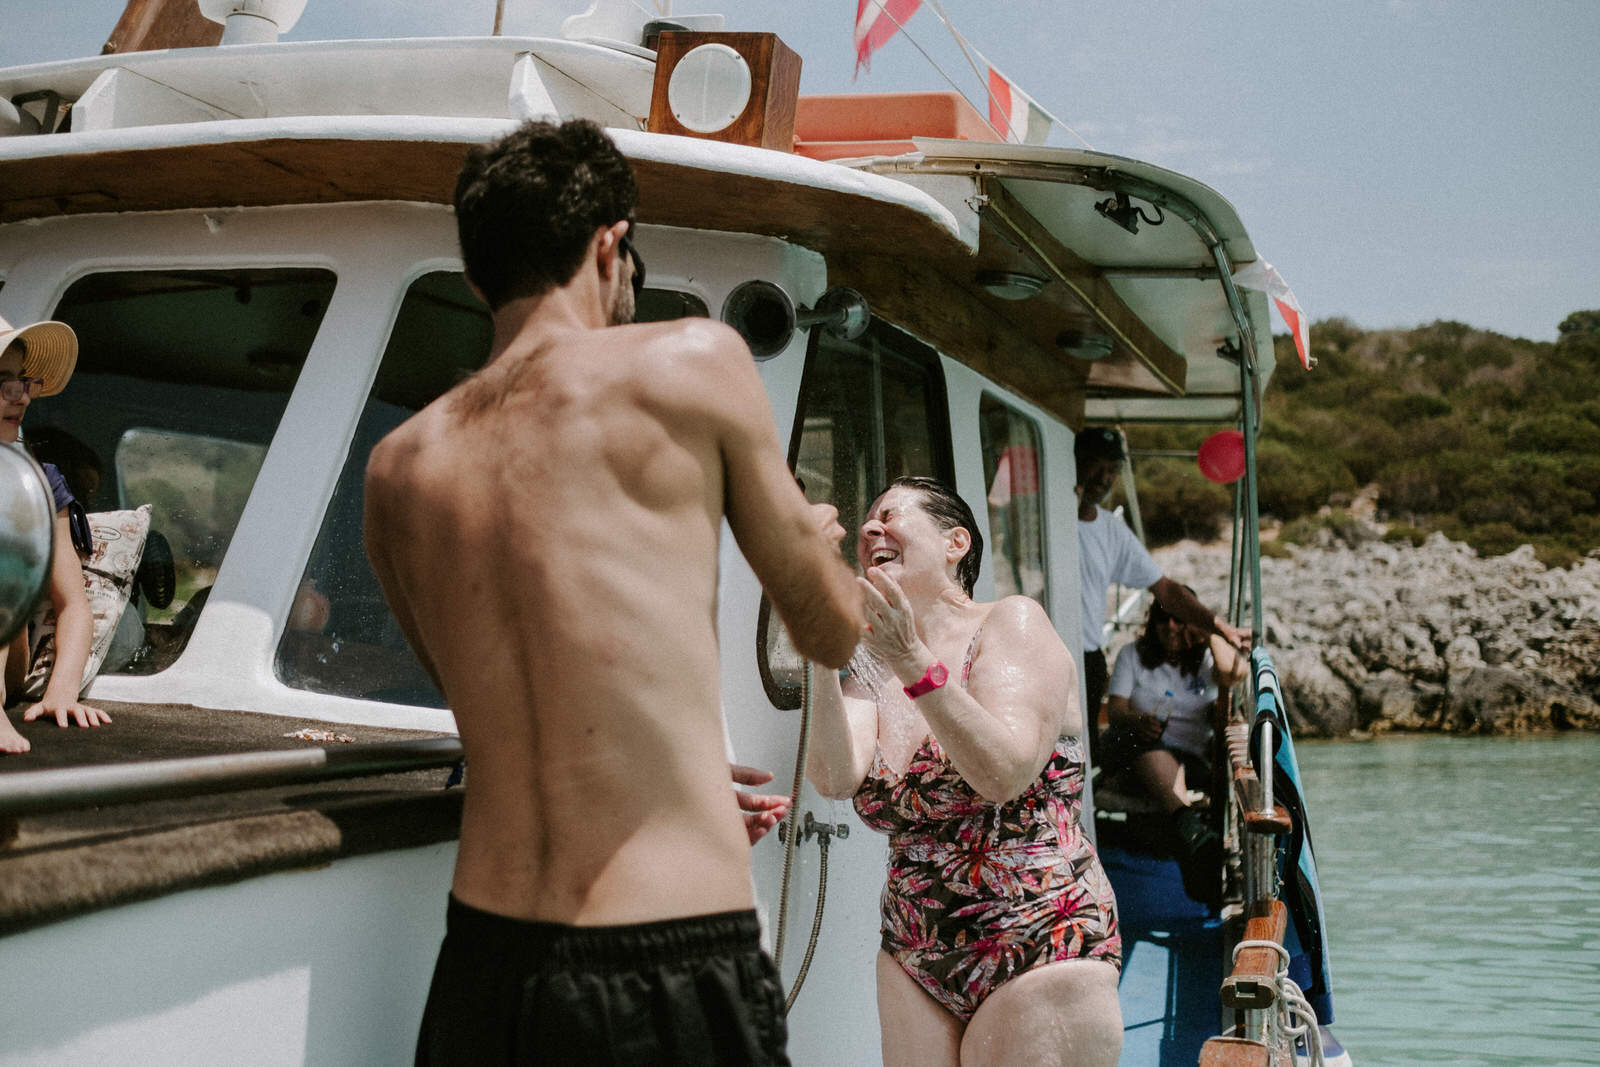 Greek Island Wedding Boat trip day 0015